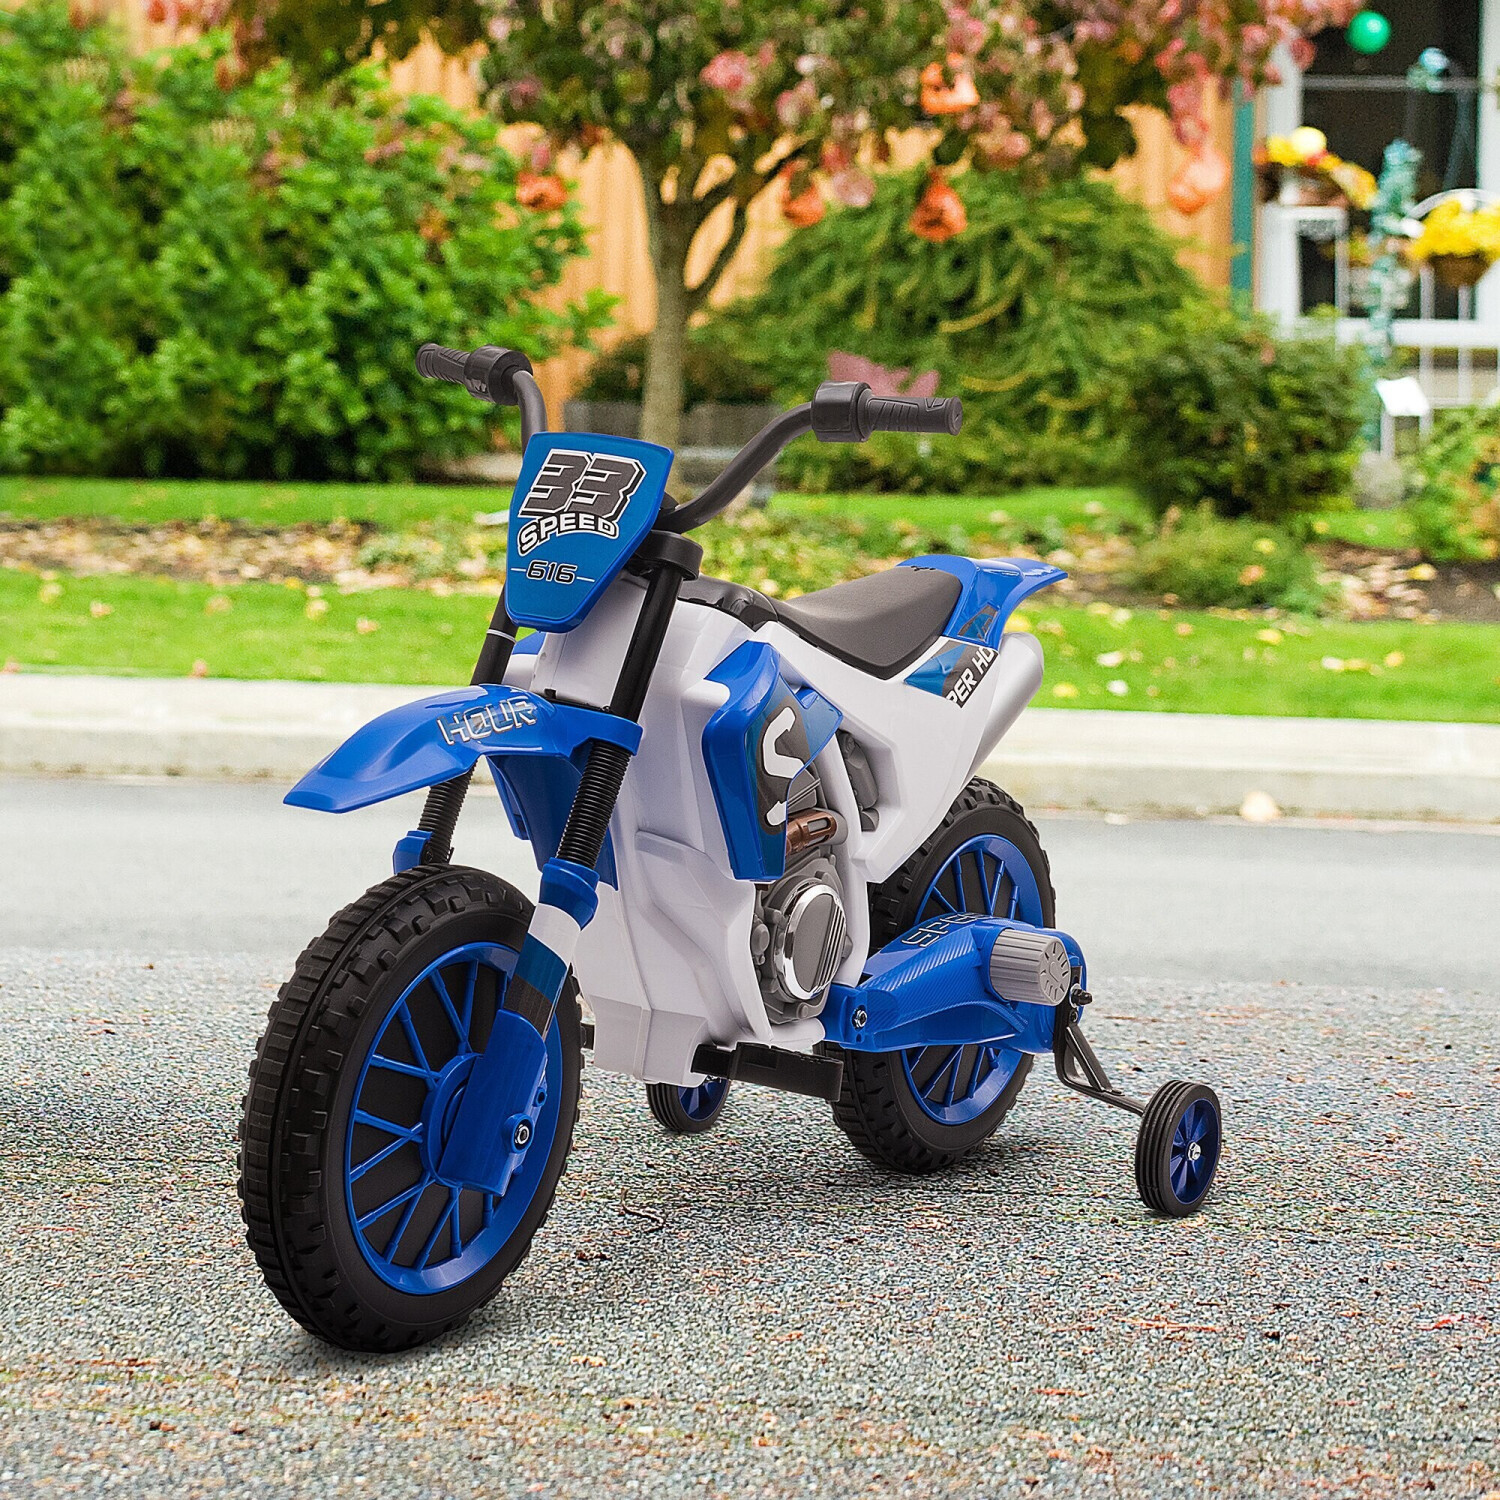 HOMCOM moto pour enfant Moto Cross Electrique avec roulettes Amovibles pour  Enfant de 3 à 8 Ans Rouge 